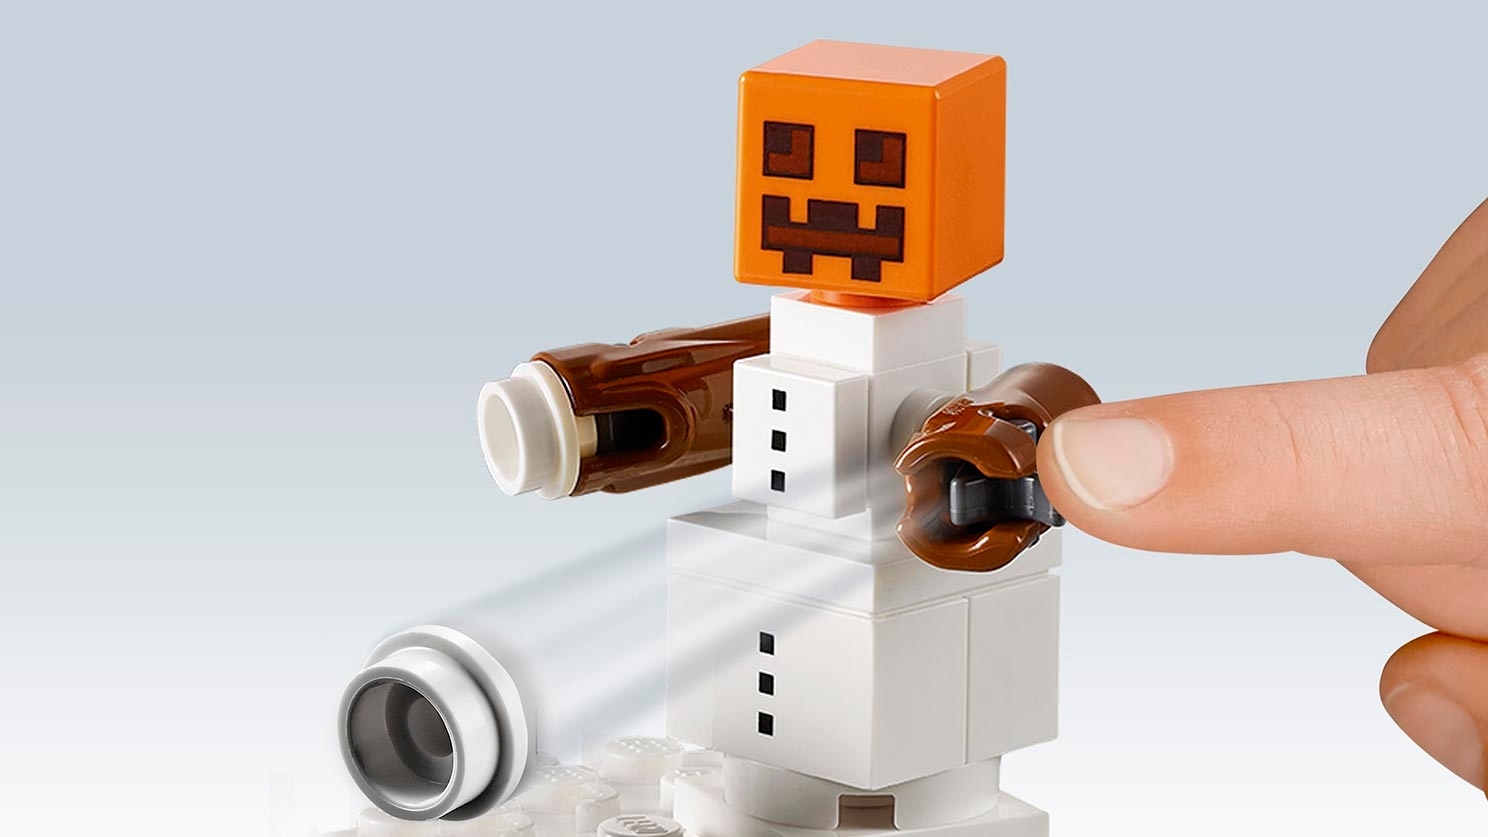 Lego minifigura BONECO DE NEVE MC681M